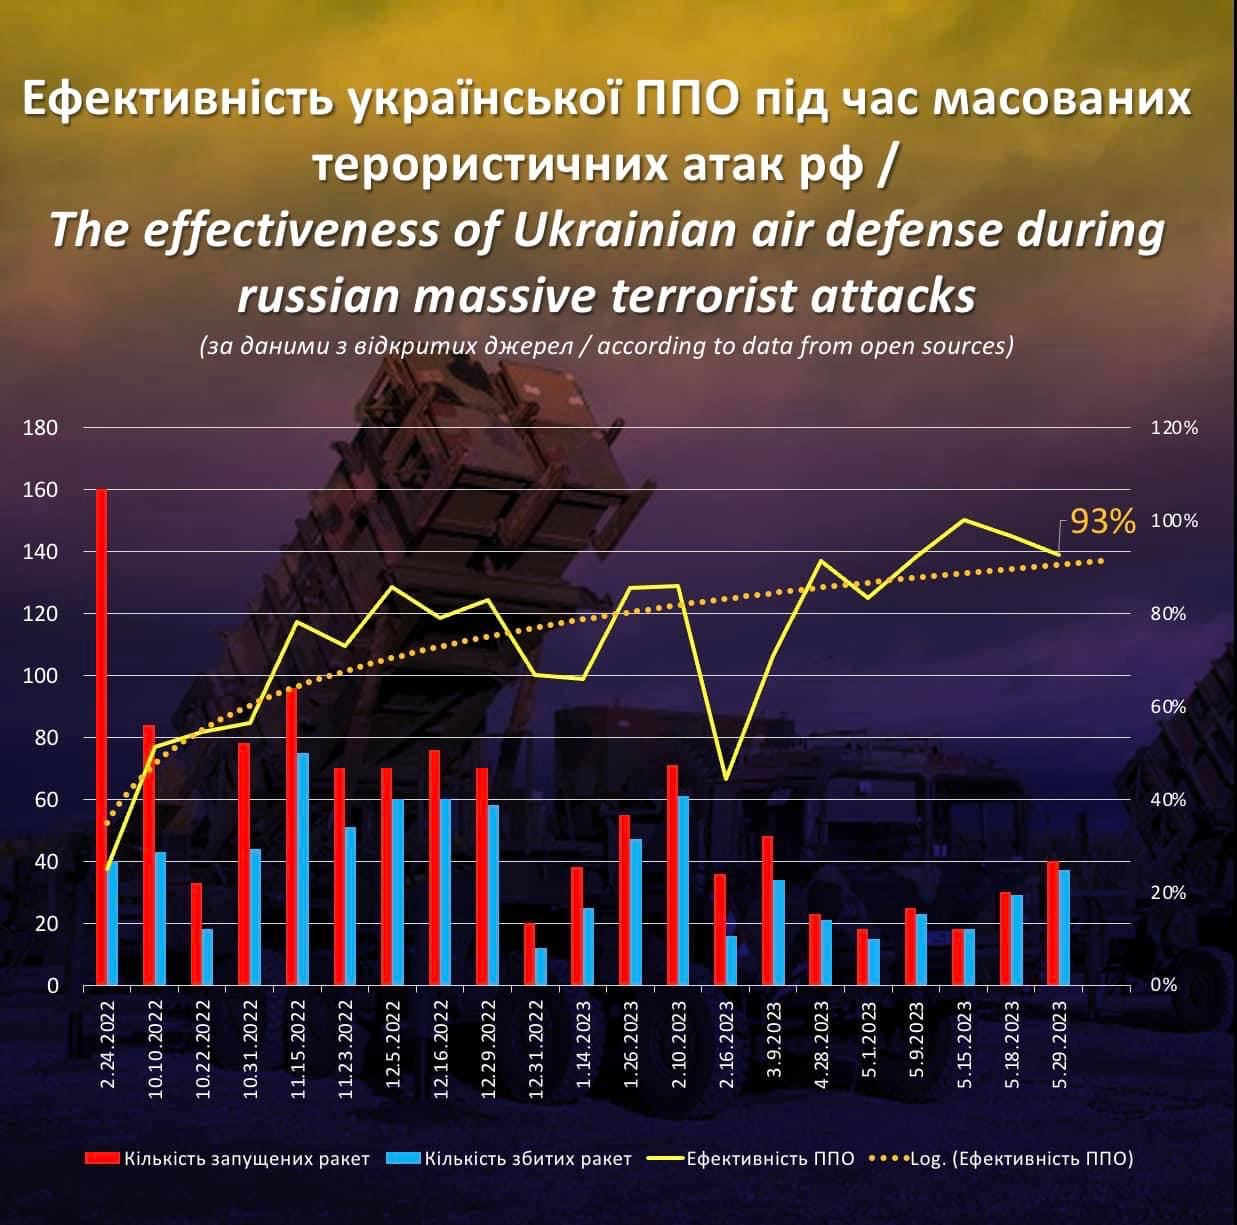 อินโฟกราฟิก: ประสิทธิภาพของการป้องกันทางอากาศของยูเครนในการยิงขีปนาวุธของรัสเซีย